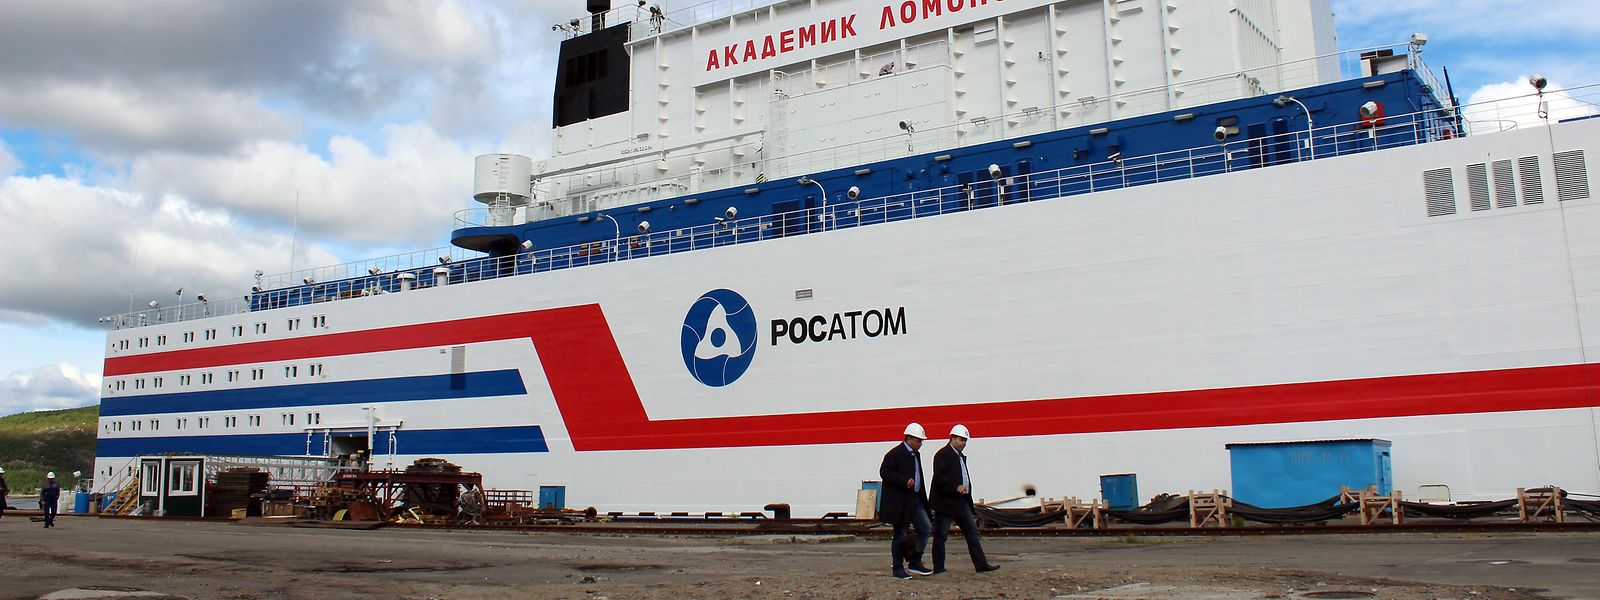  Das erste schwimmende Atomkraftwerk mit dem Namen Akademik Lomonossow liegt in einem Hafen in der Stadt Murmansk.